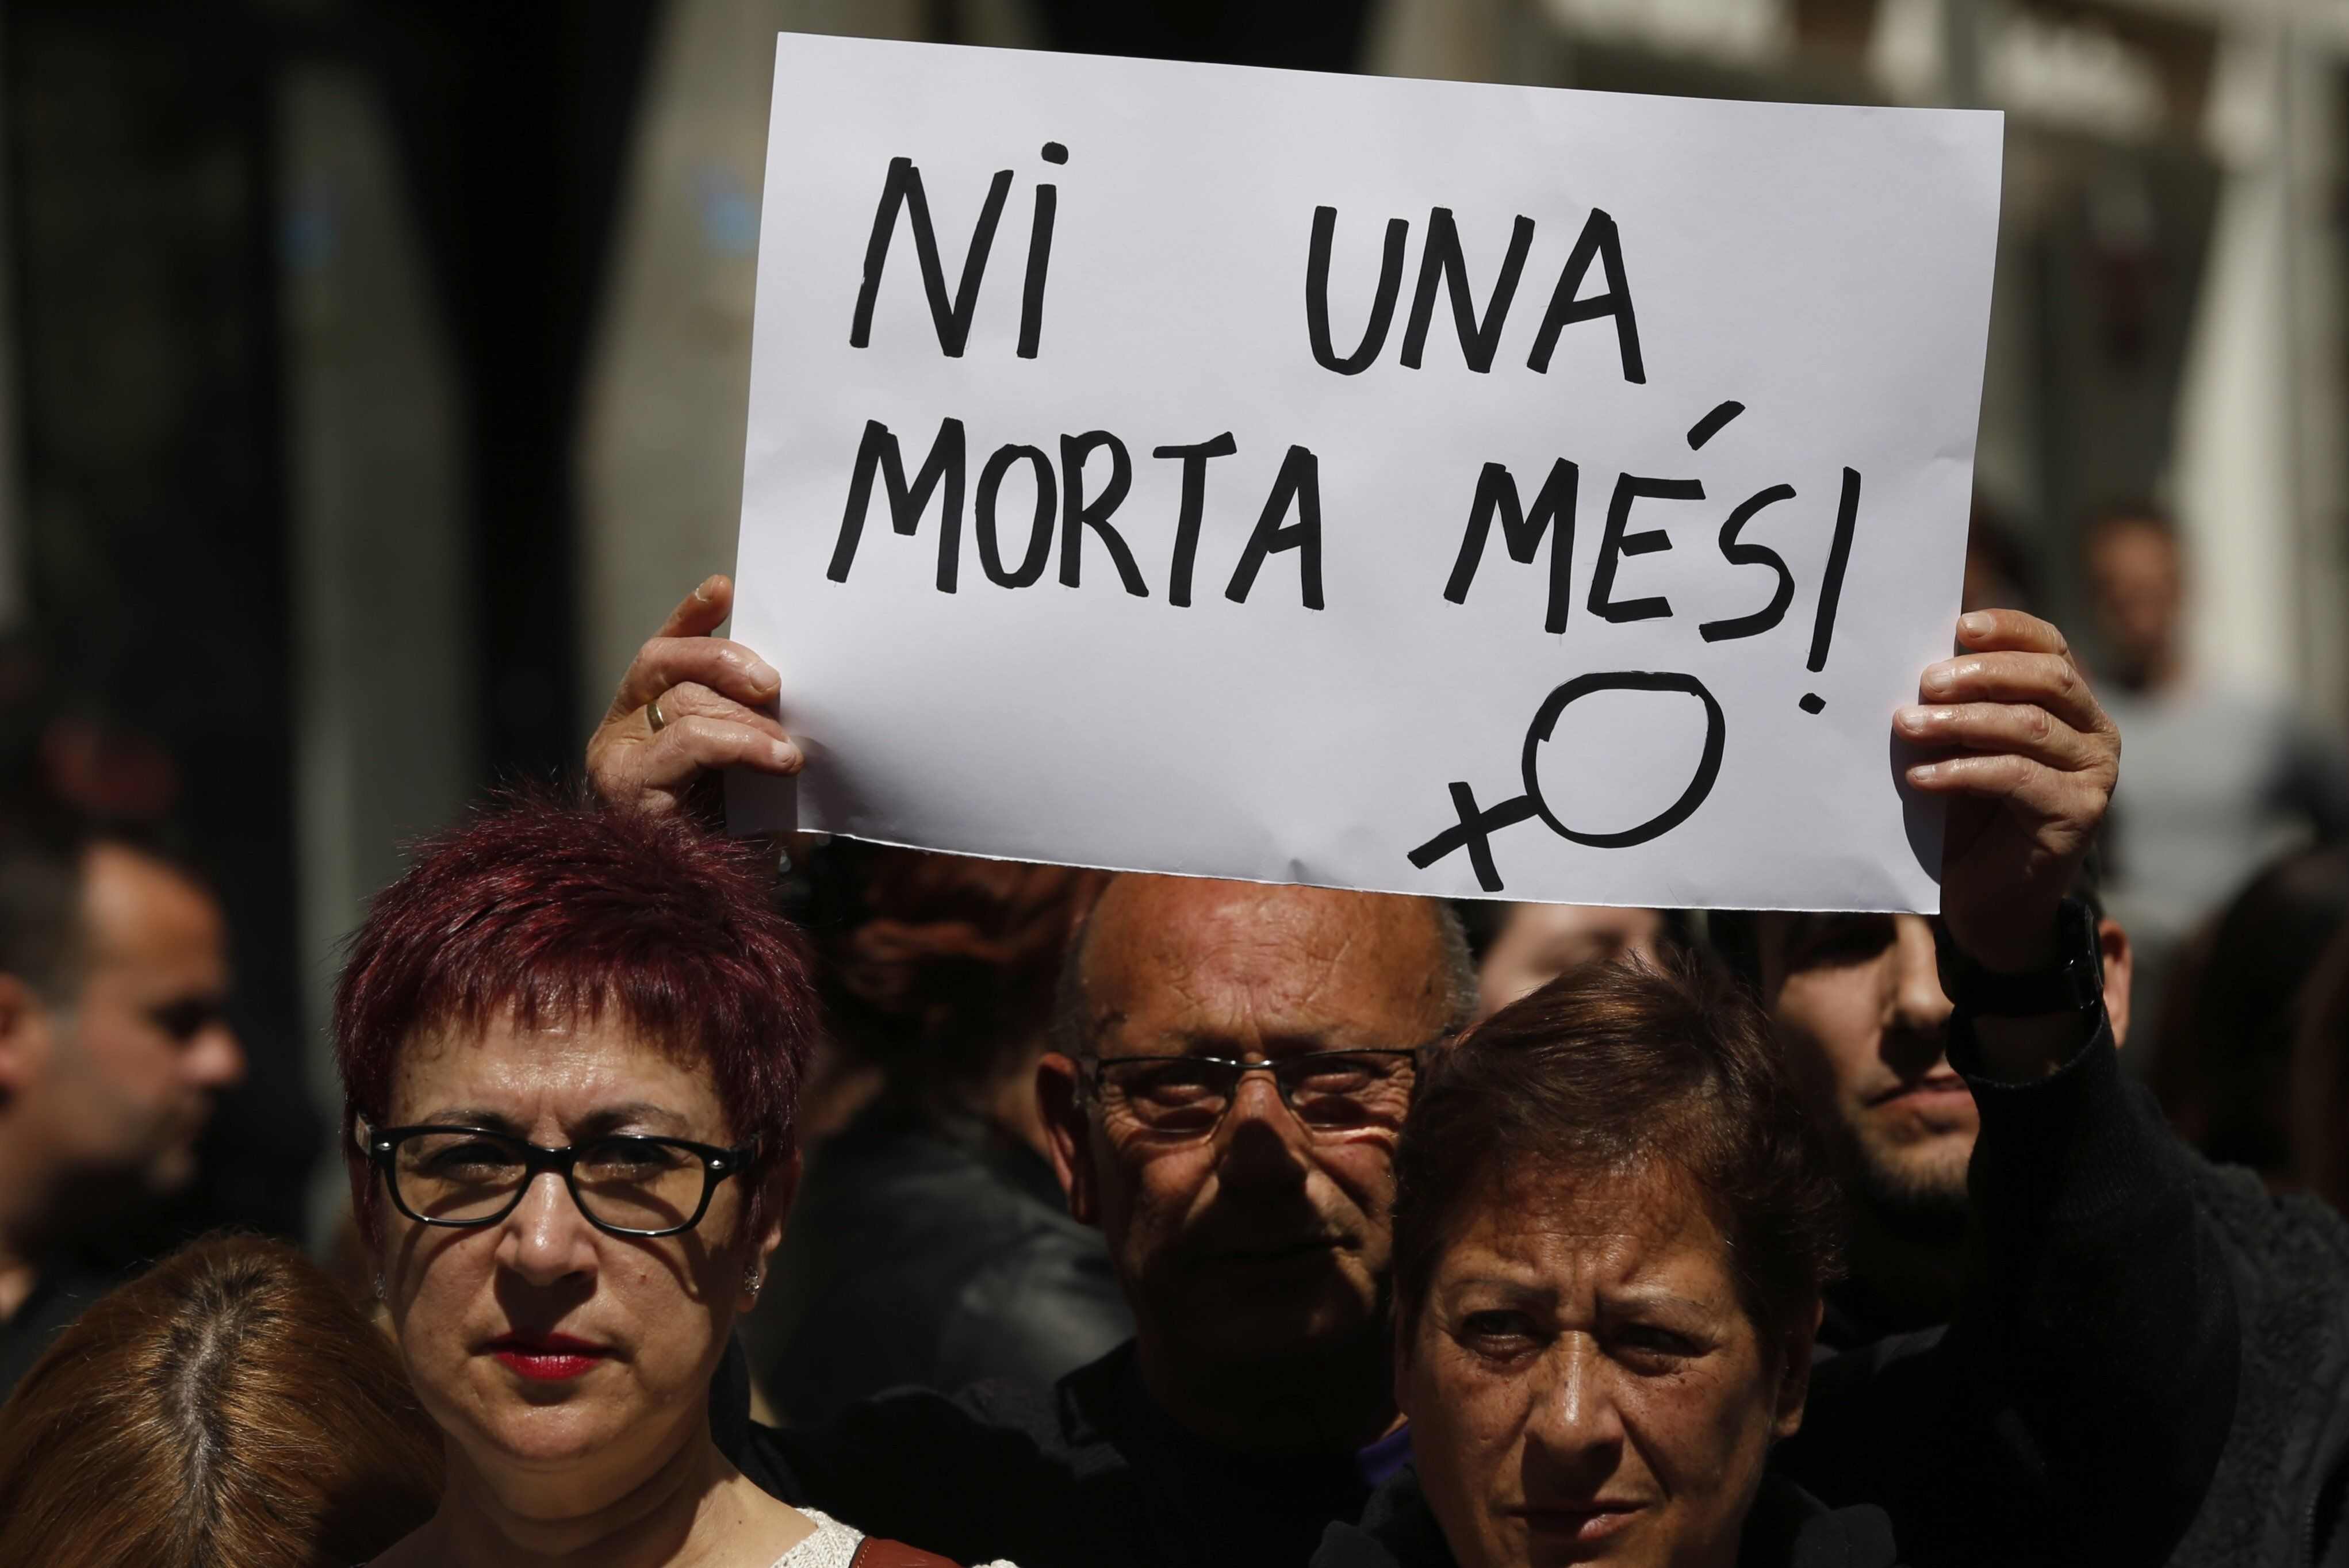 La dona de Sant Feliu, segona víctima violència masclista el 2016 a Catalunya